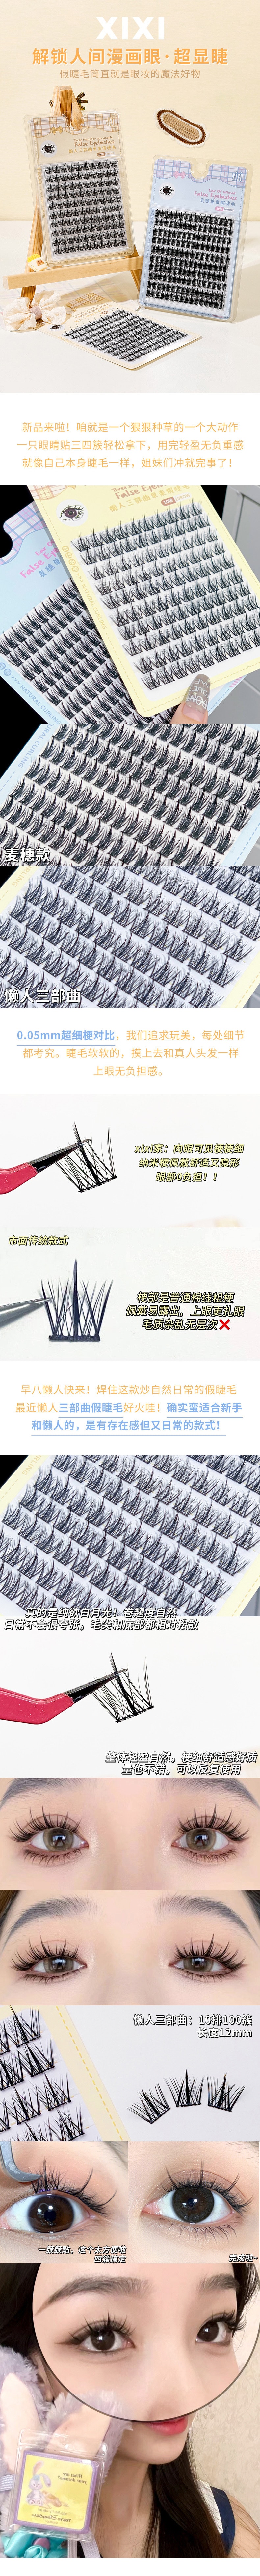 中国 xixi【新款】10排大容量超细梗分段式睫毛 #懒人三部曲 送美睫4件